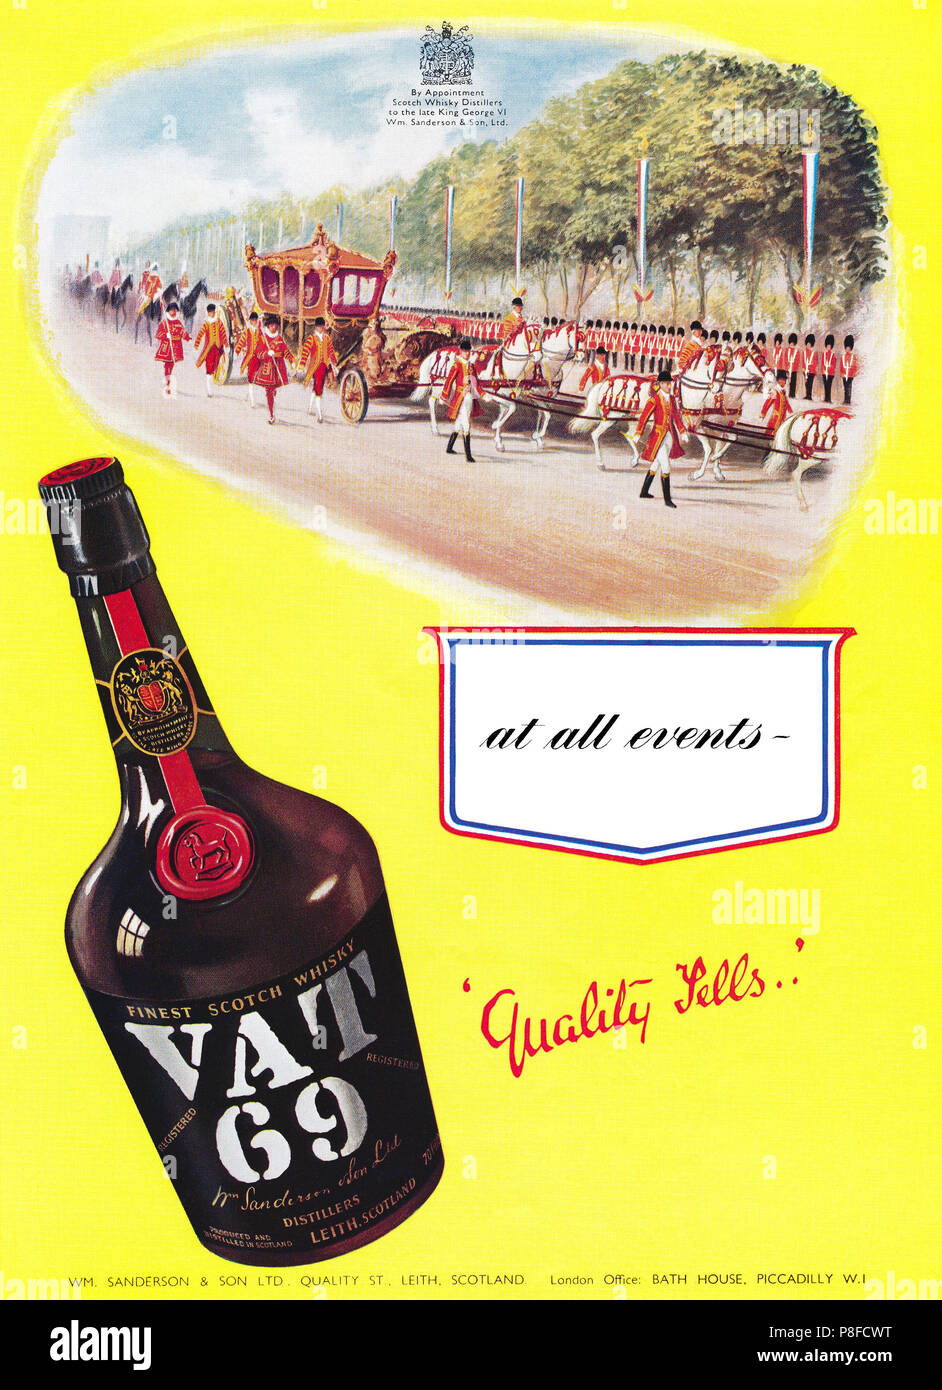 1953 British pubblicità per l'Iva 69 Scotch whisky in incoronazione anno. Foto Stock